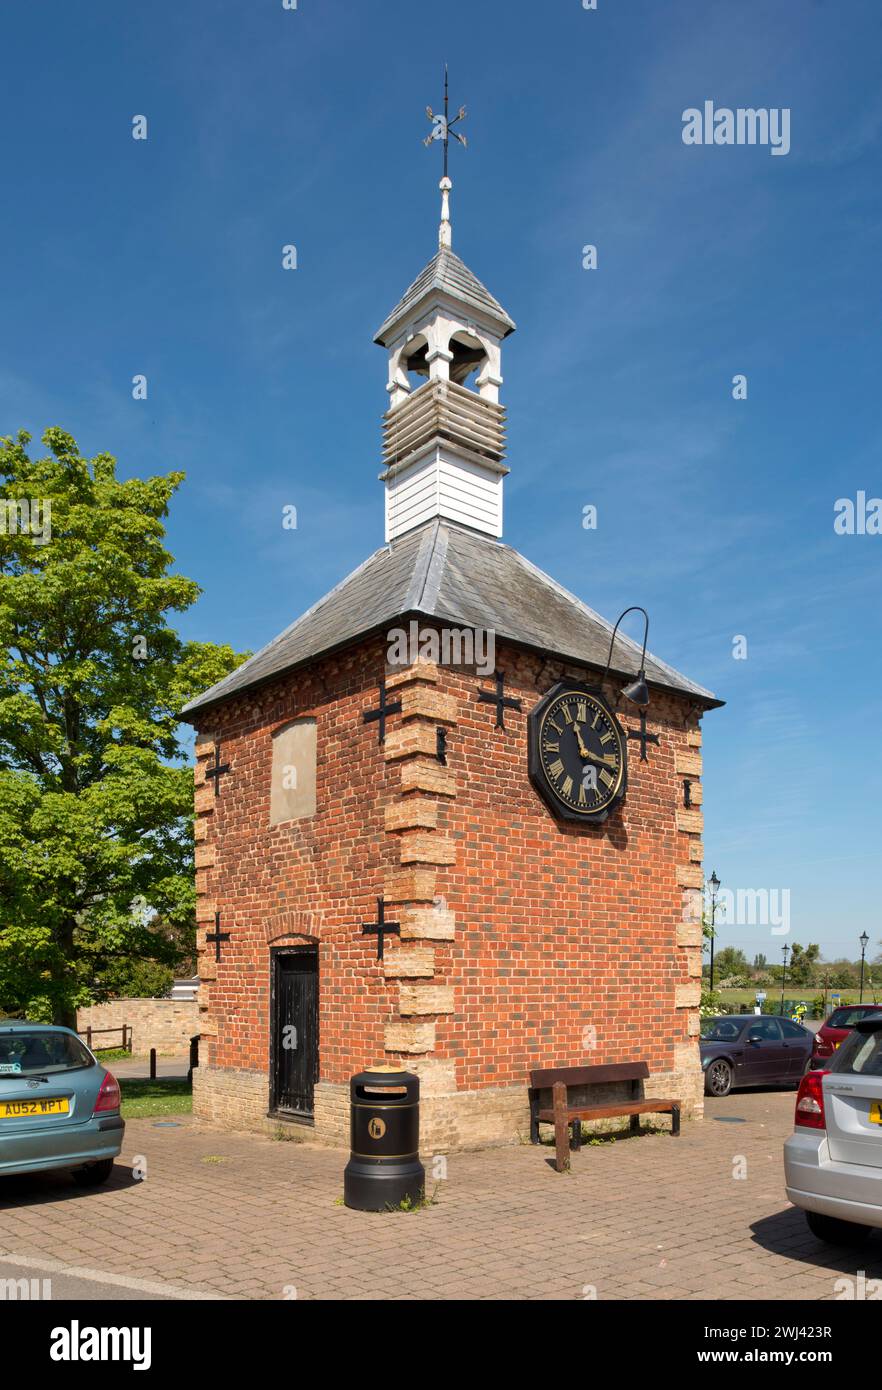 Les cachots du village. Fenstanton, Cambridgeshire, construit à la fin du 18ème siècle avec horloge et clocher. Banque D'Images